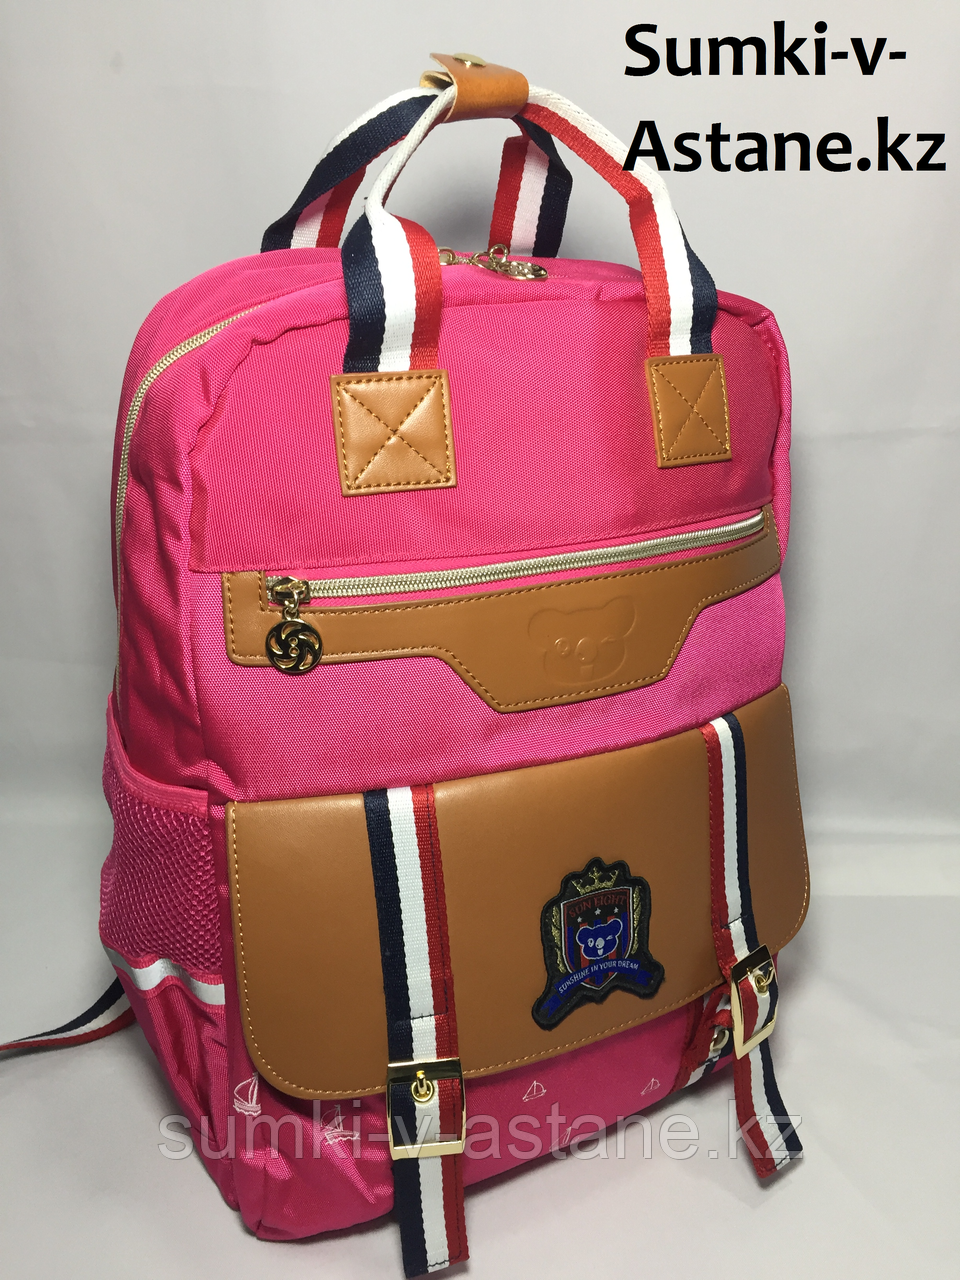 Школьный рюкзак для девочек, со 2-го по 4-й класс (высота 39 см, длина 27 см, ширина 16 см)